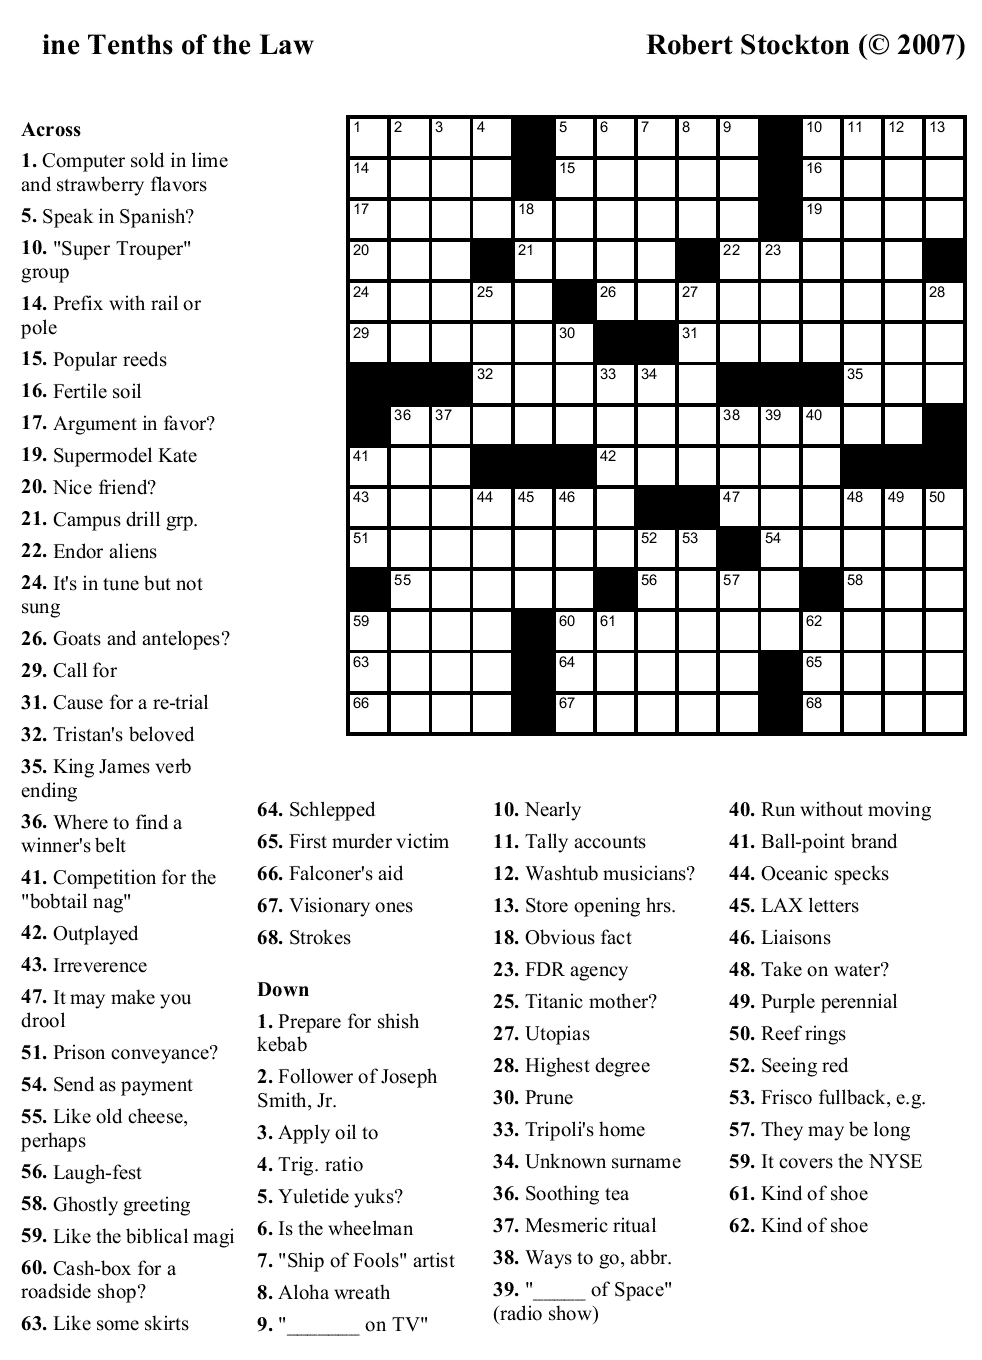 Easy Printable Crossword Puzzels - Infocap Ltd. - Easy Printable Crossword Puzzles With Answers